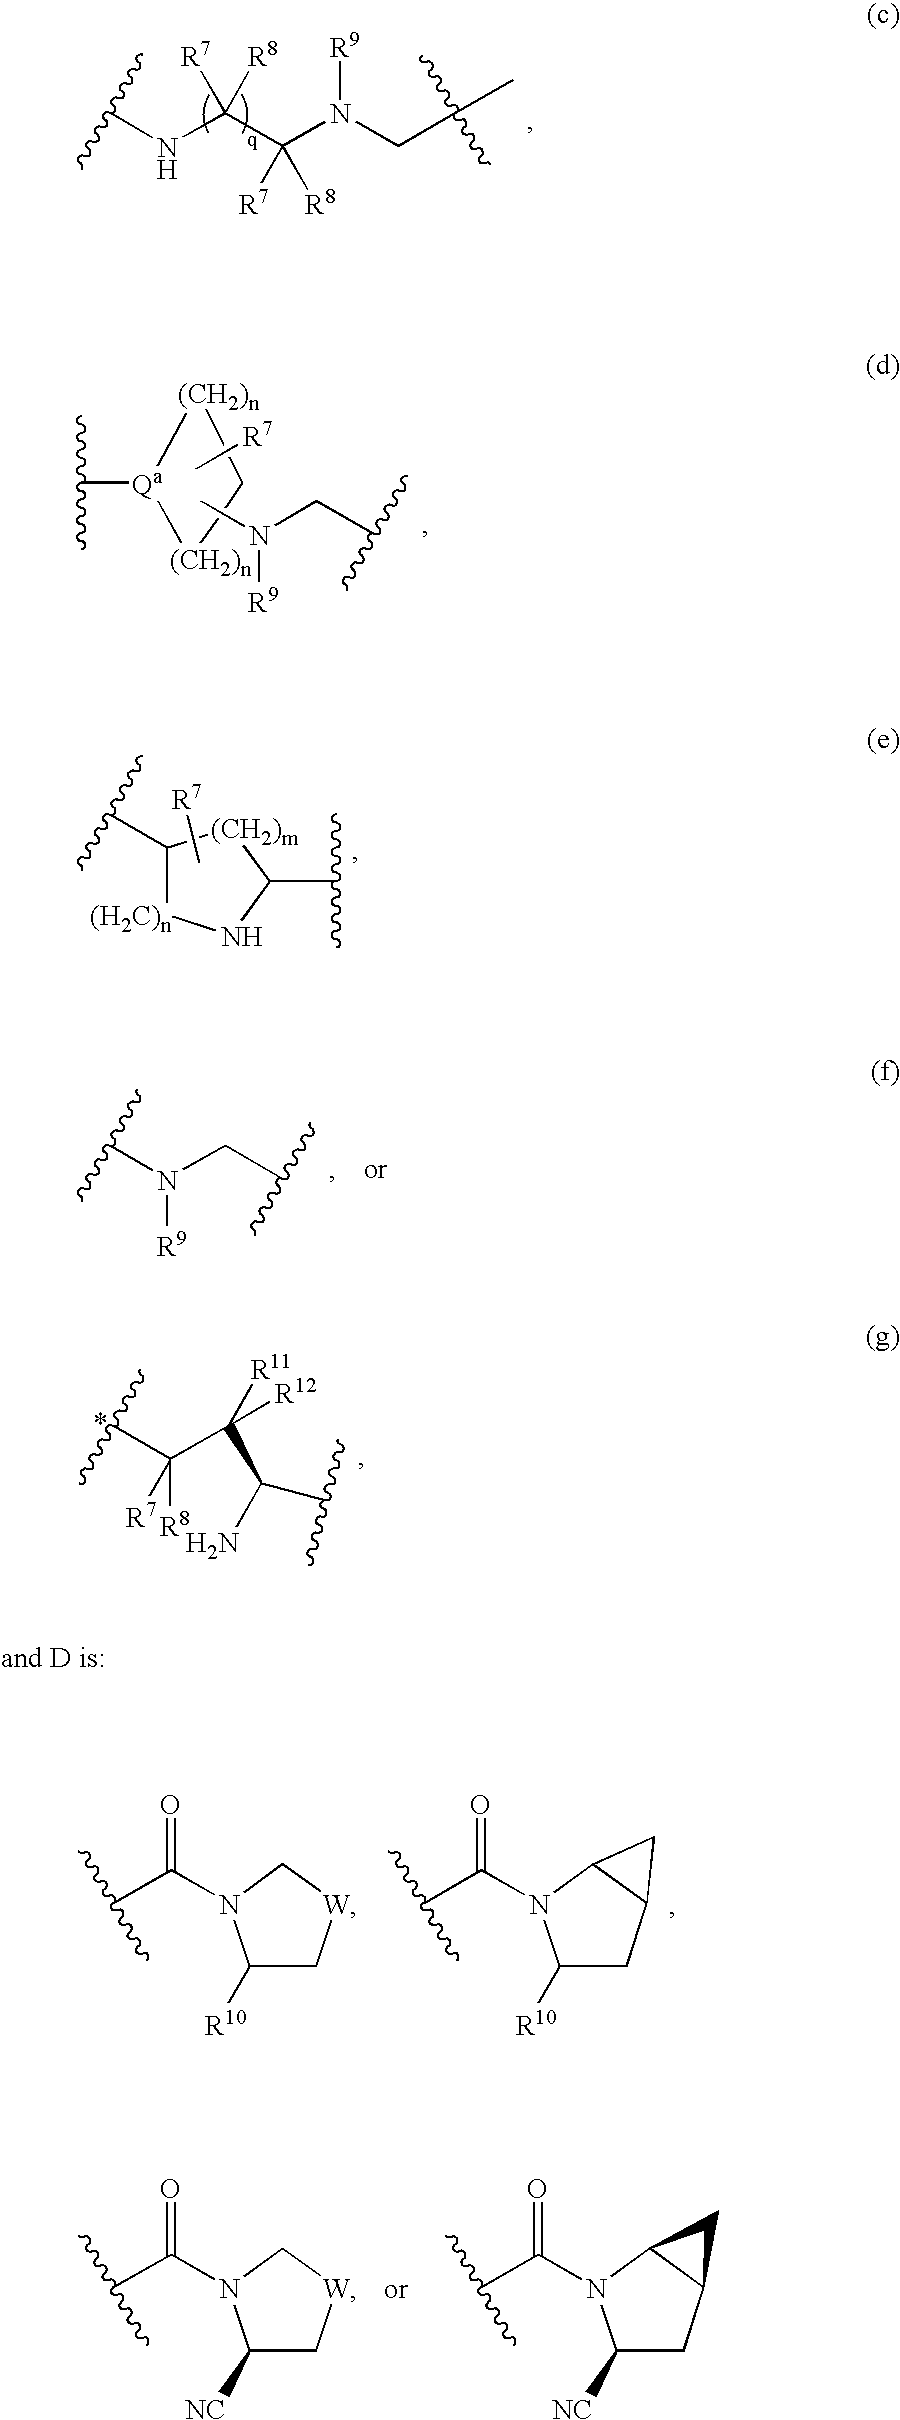 Dipeptidyl peptidase-IV inhibitors